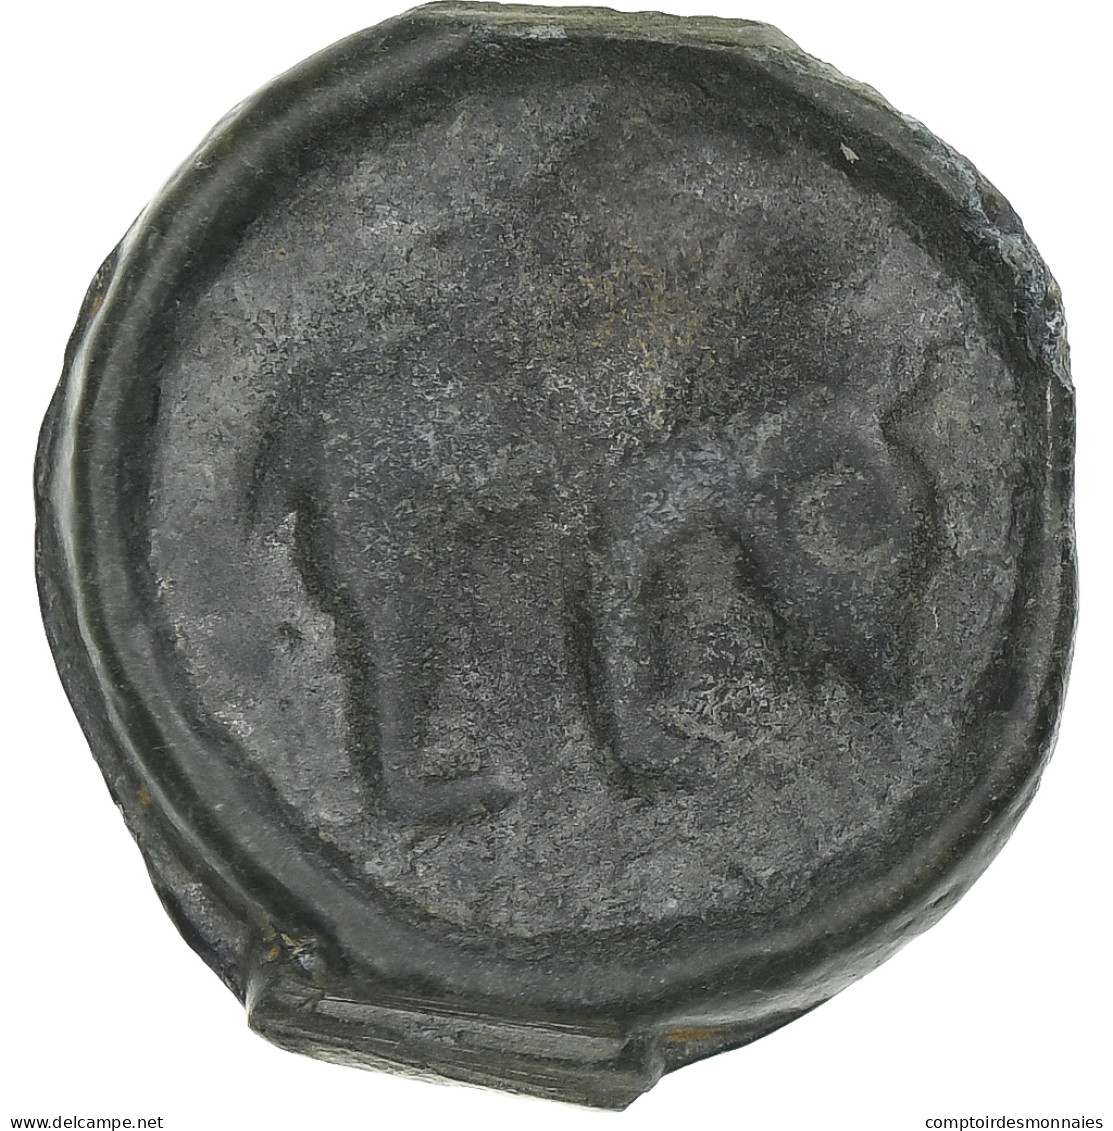 Rèmes, Potin Au Bucrane, 1st Century BC, TTB, Bronze, Delestrée:221 - Celtic